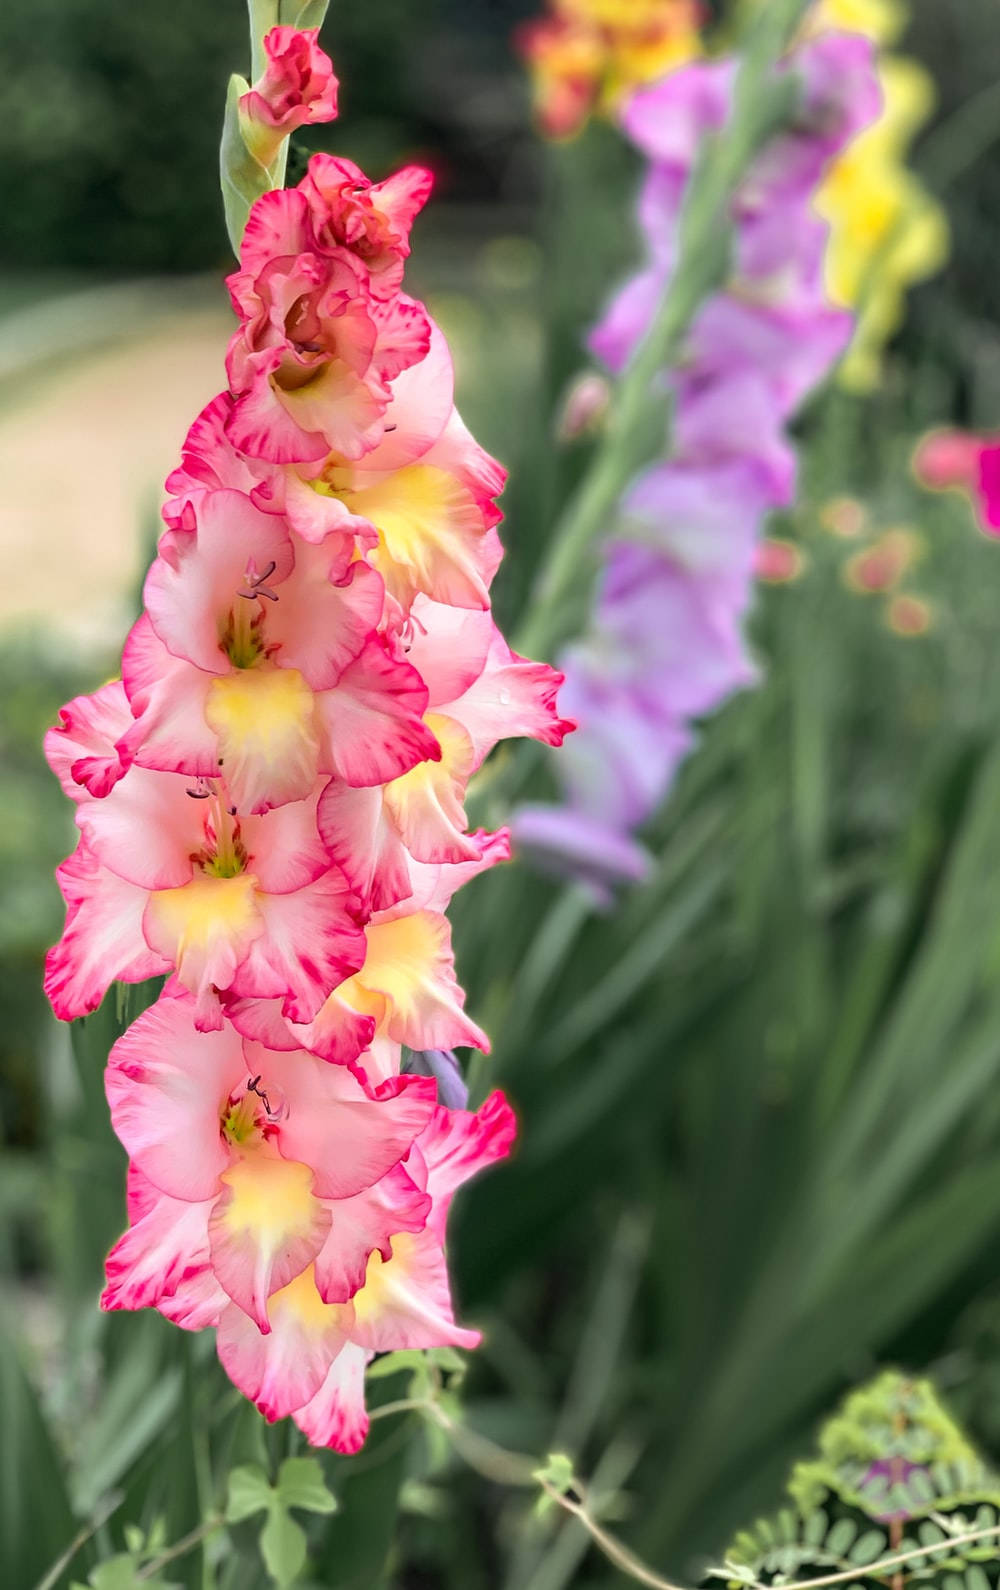 Tri-colored Gladiolus Flower